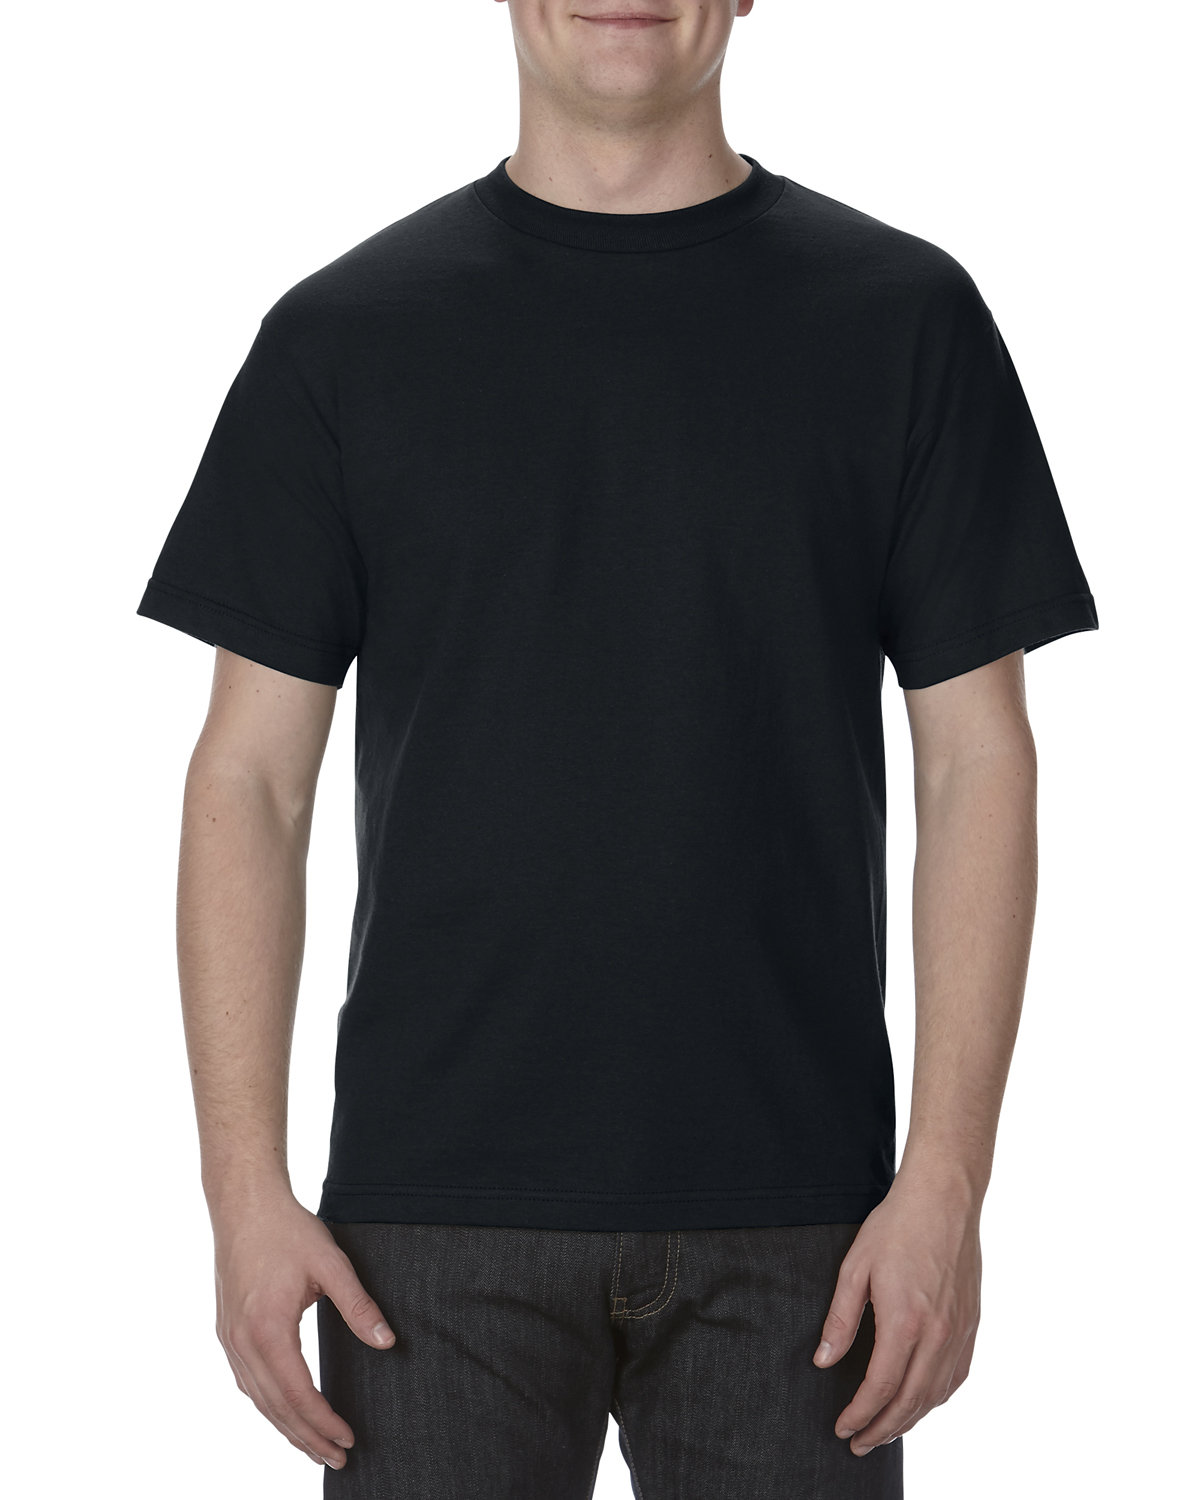 Alstyle Adult 6.0 oz., 100% Cotton T-Shirt BLACK 